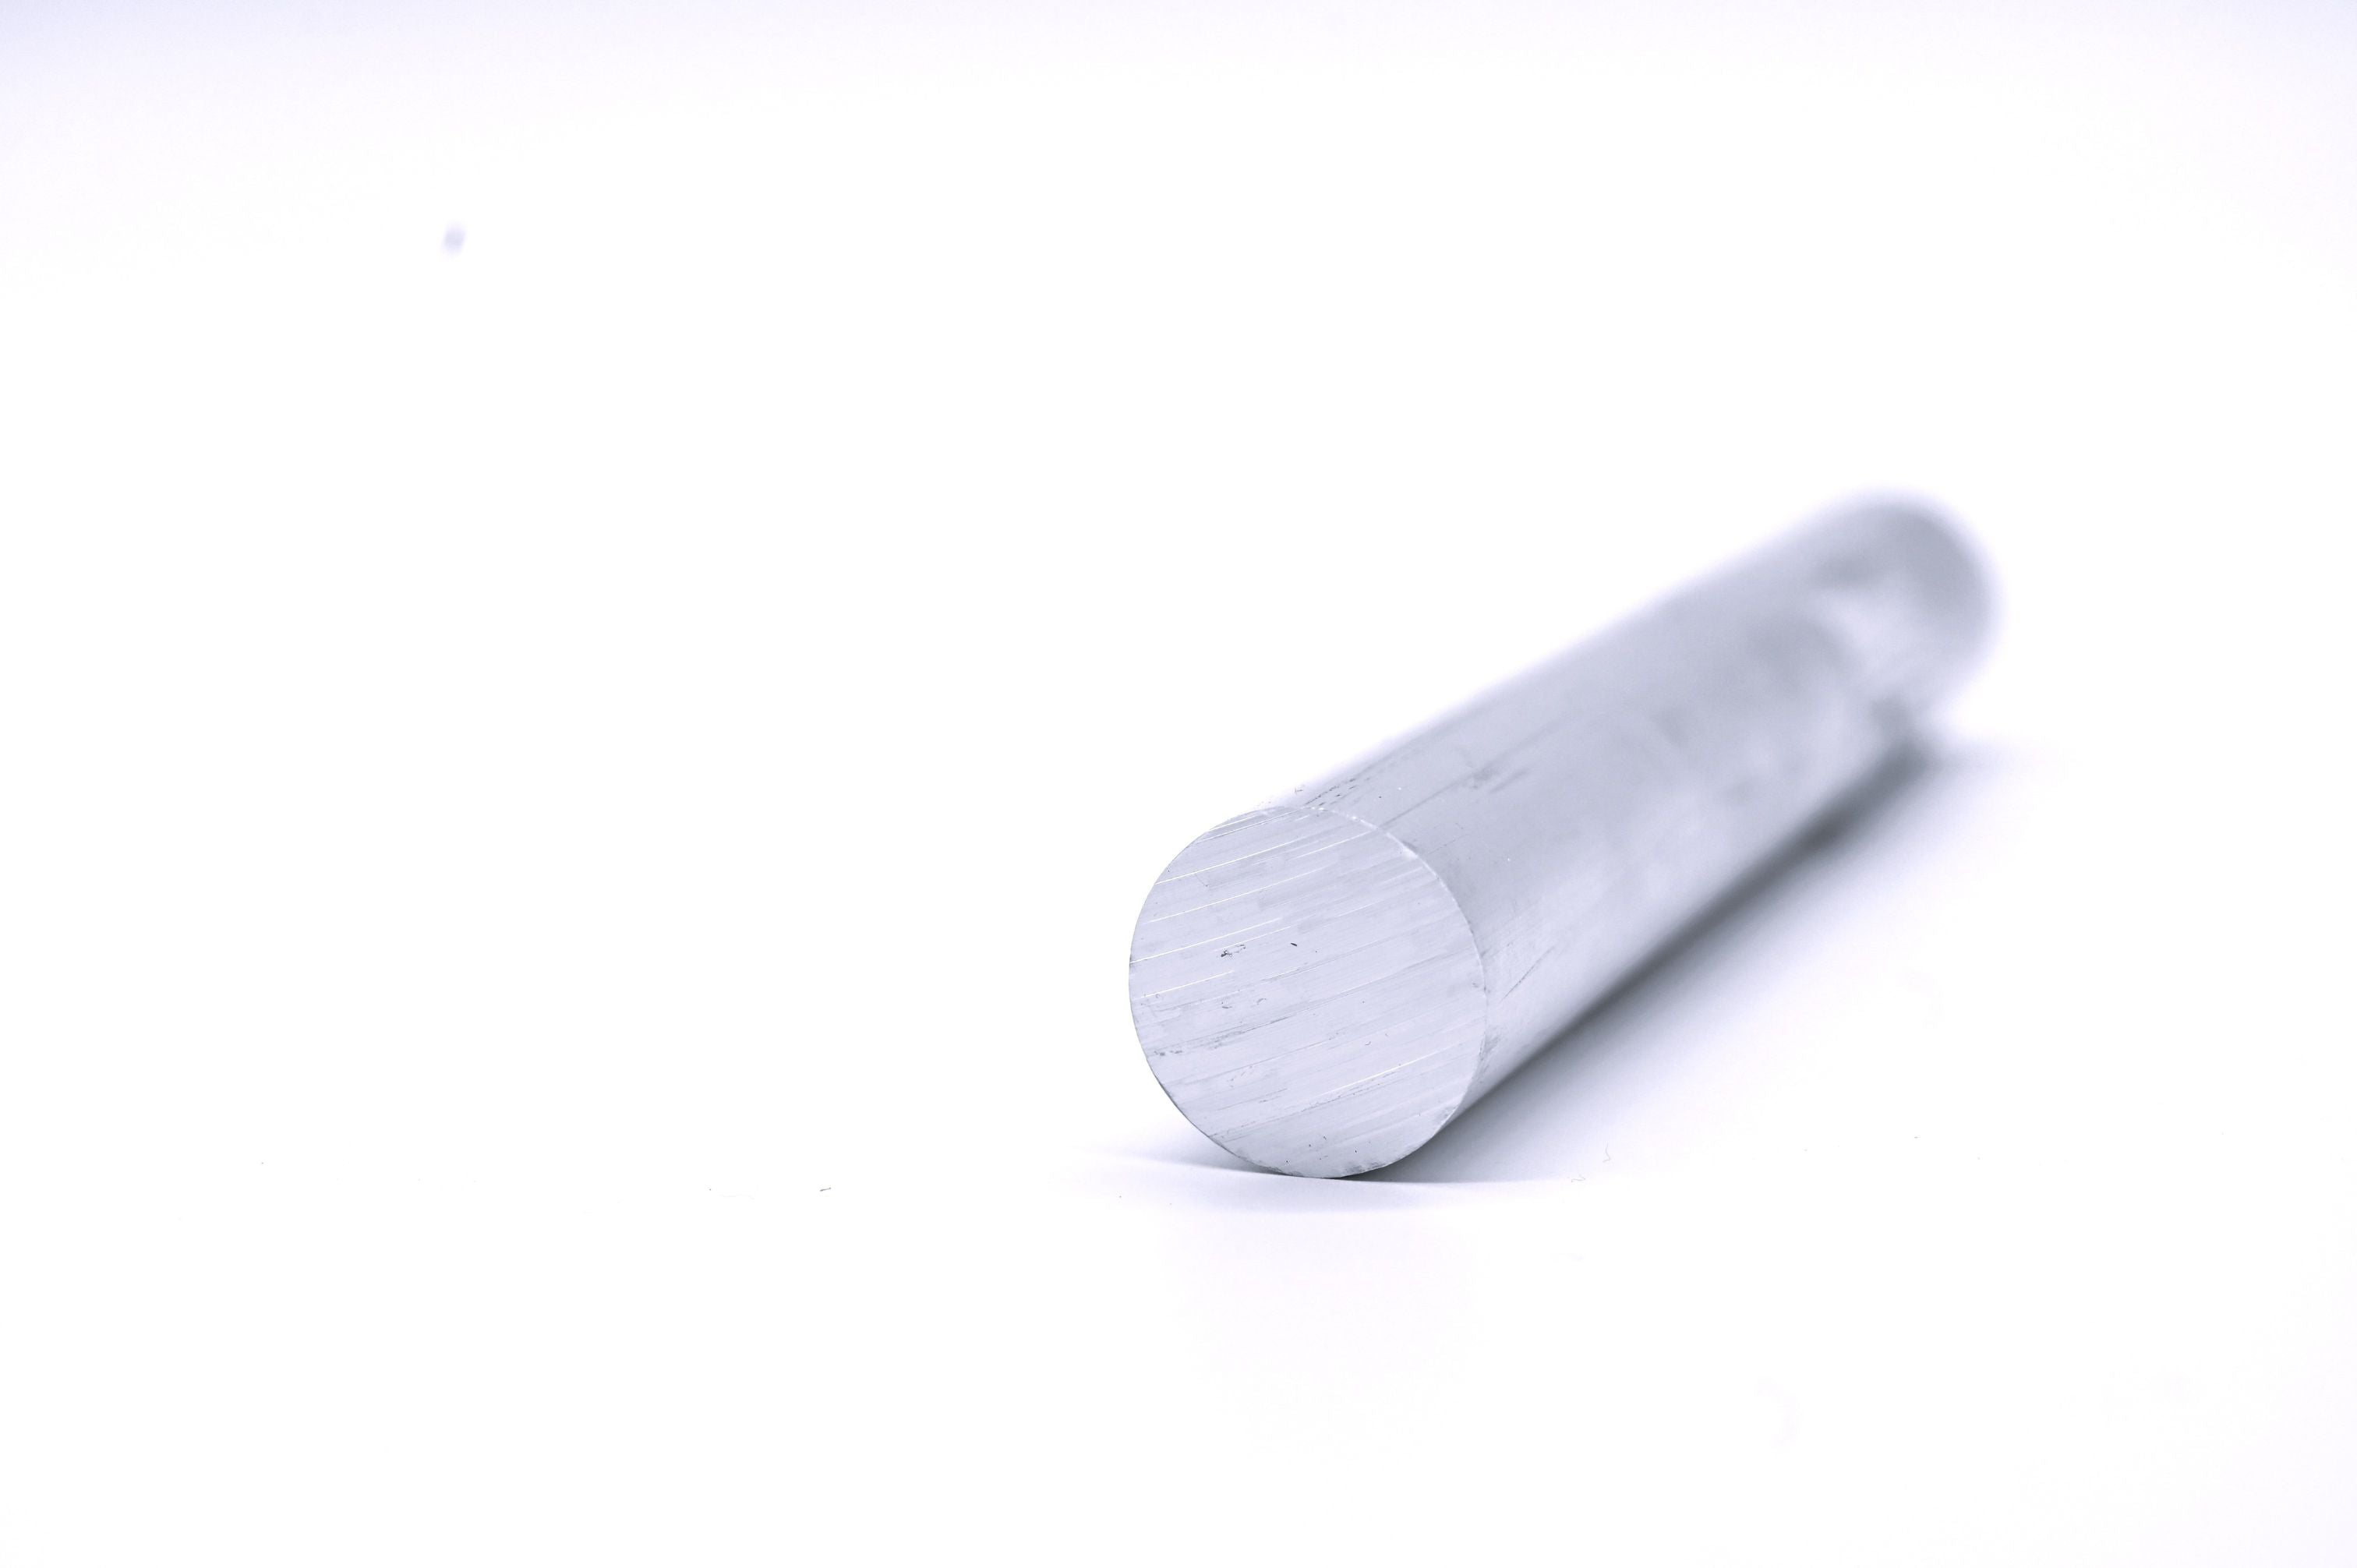 Aluminium Rundrohr, Außendurchmesser 80 mm, Wandstärke 5,0 mm, Alu Ro